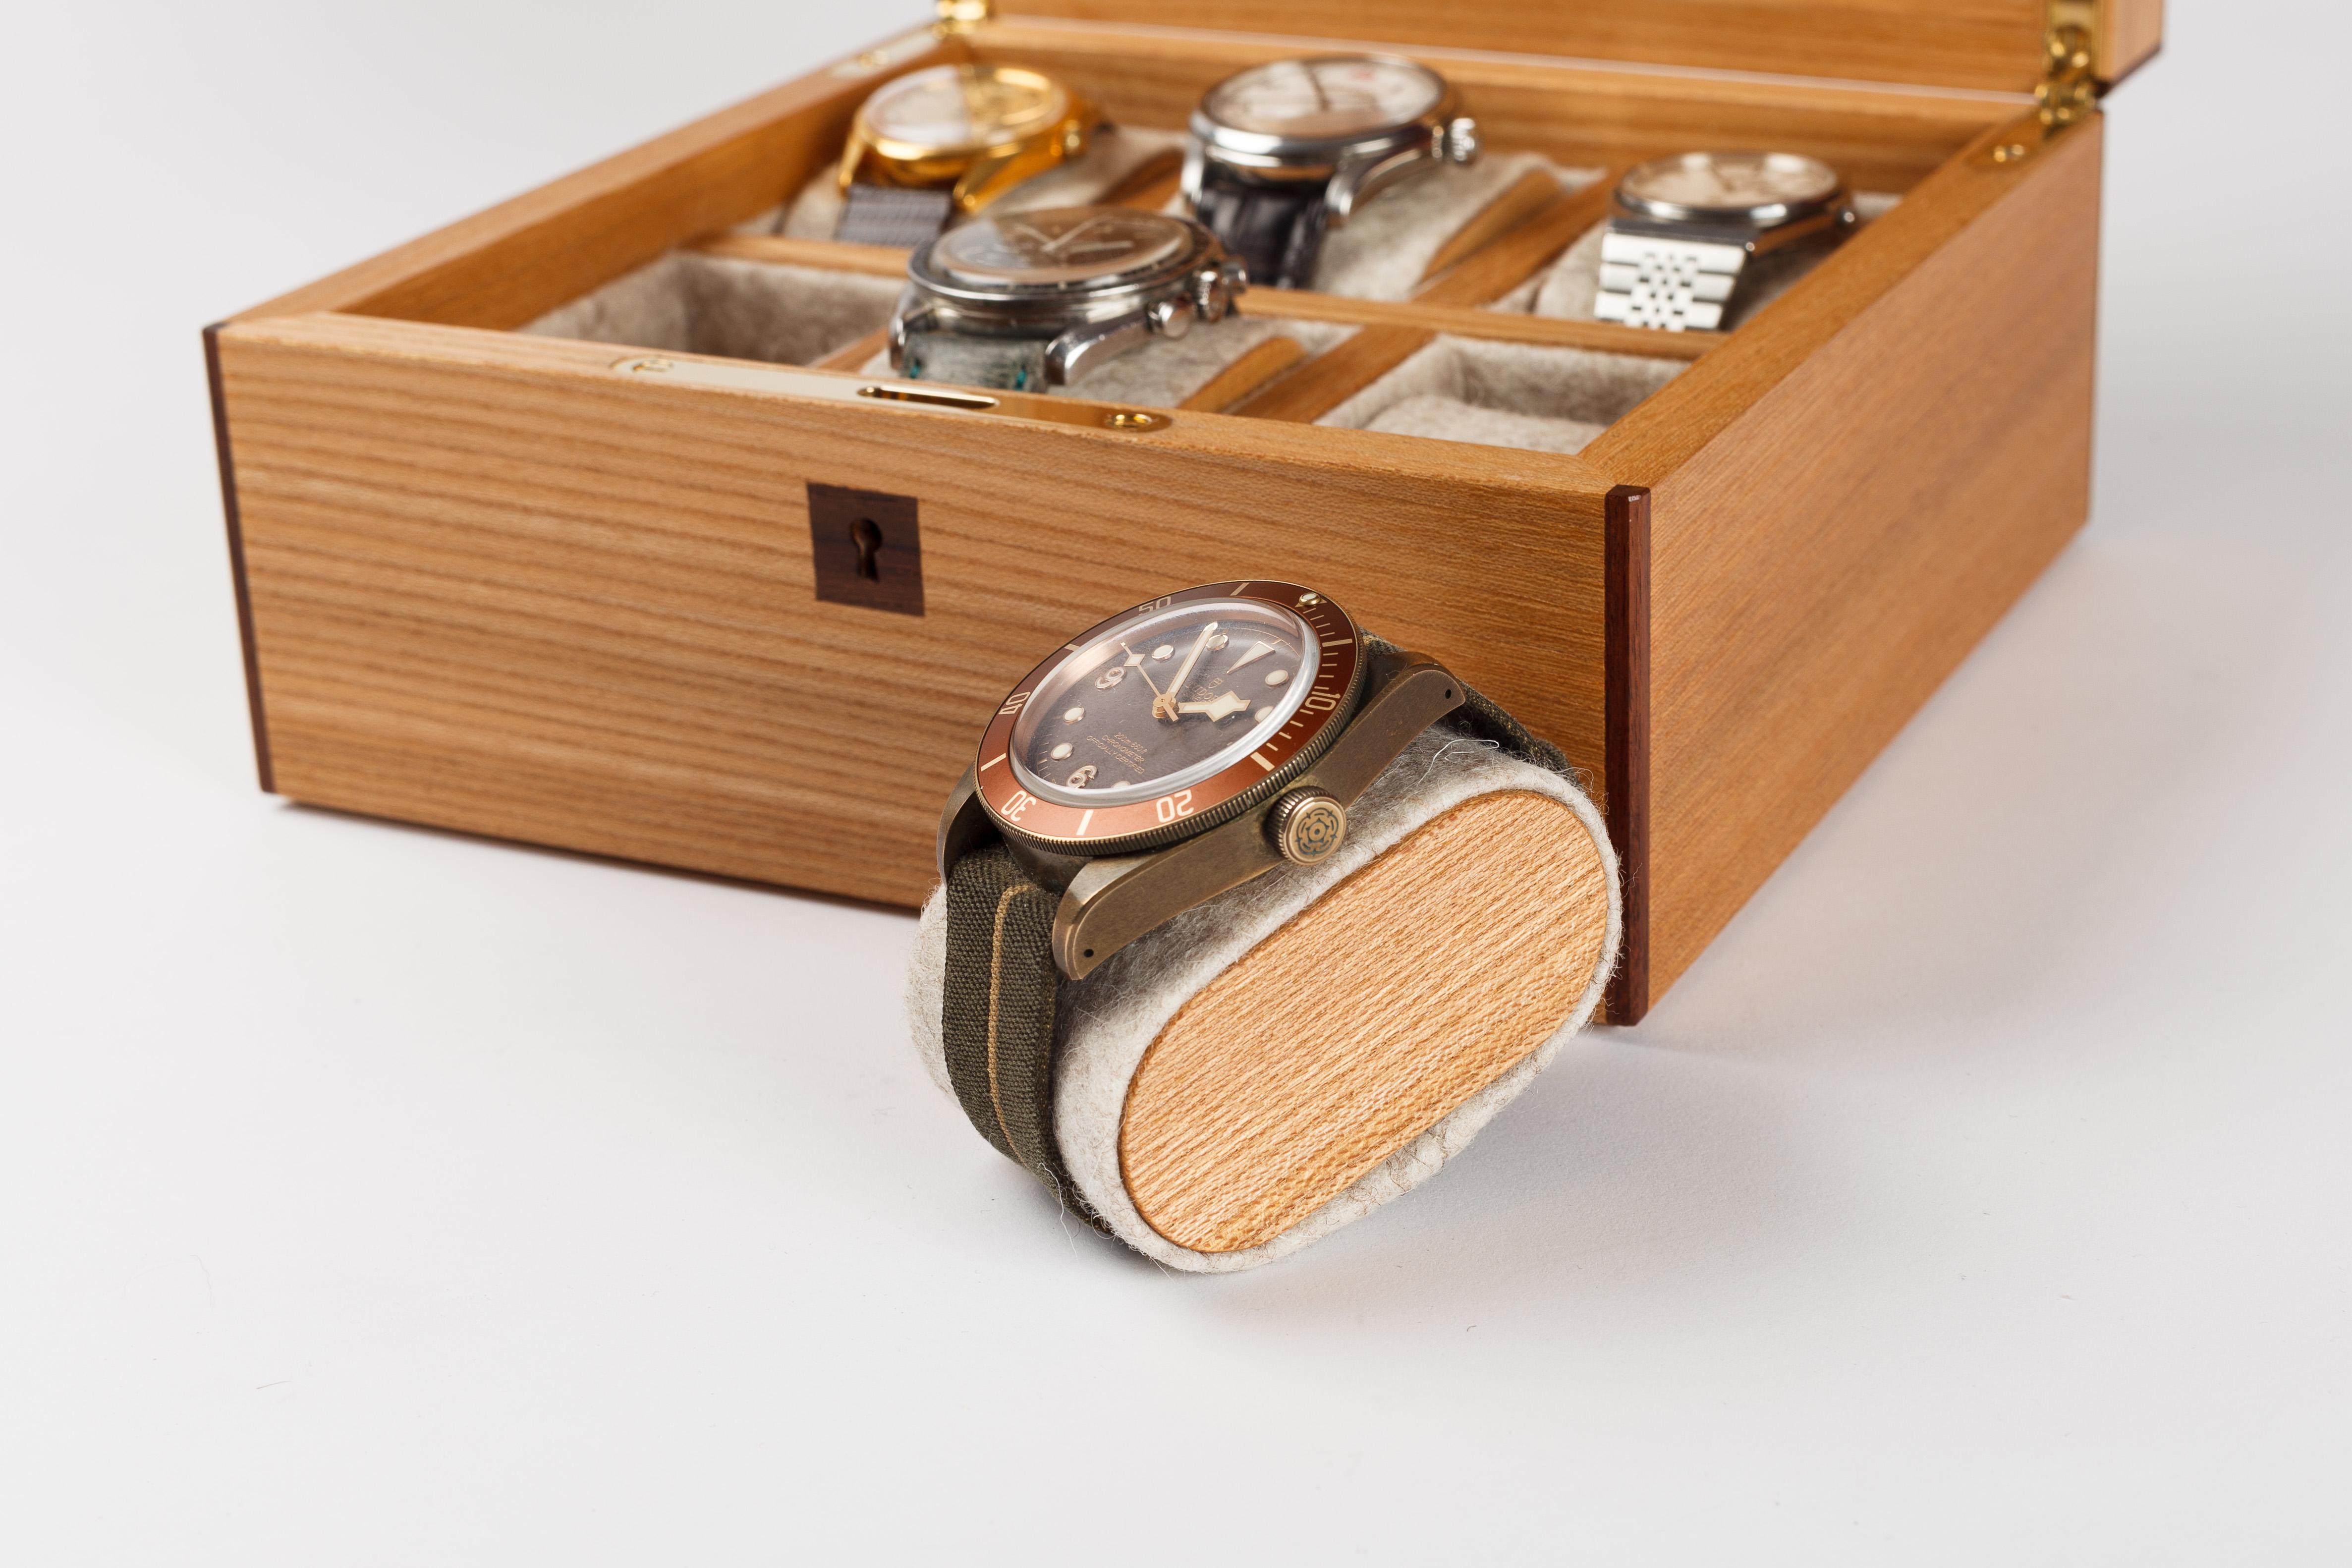 6 Boîte à montres en orme d'Écosse, avec un couvercle en parquet découpé à la main en érable ondulé et en noyer, dans un motif de vannerie inspiré des cadrans de montres guillochés. La boîte est dotée d'une bordure en palissandre massif et d'un